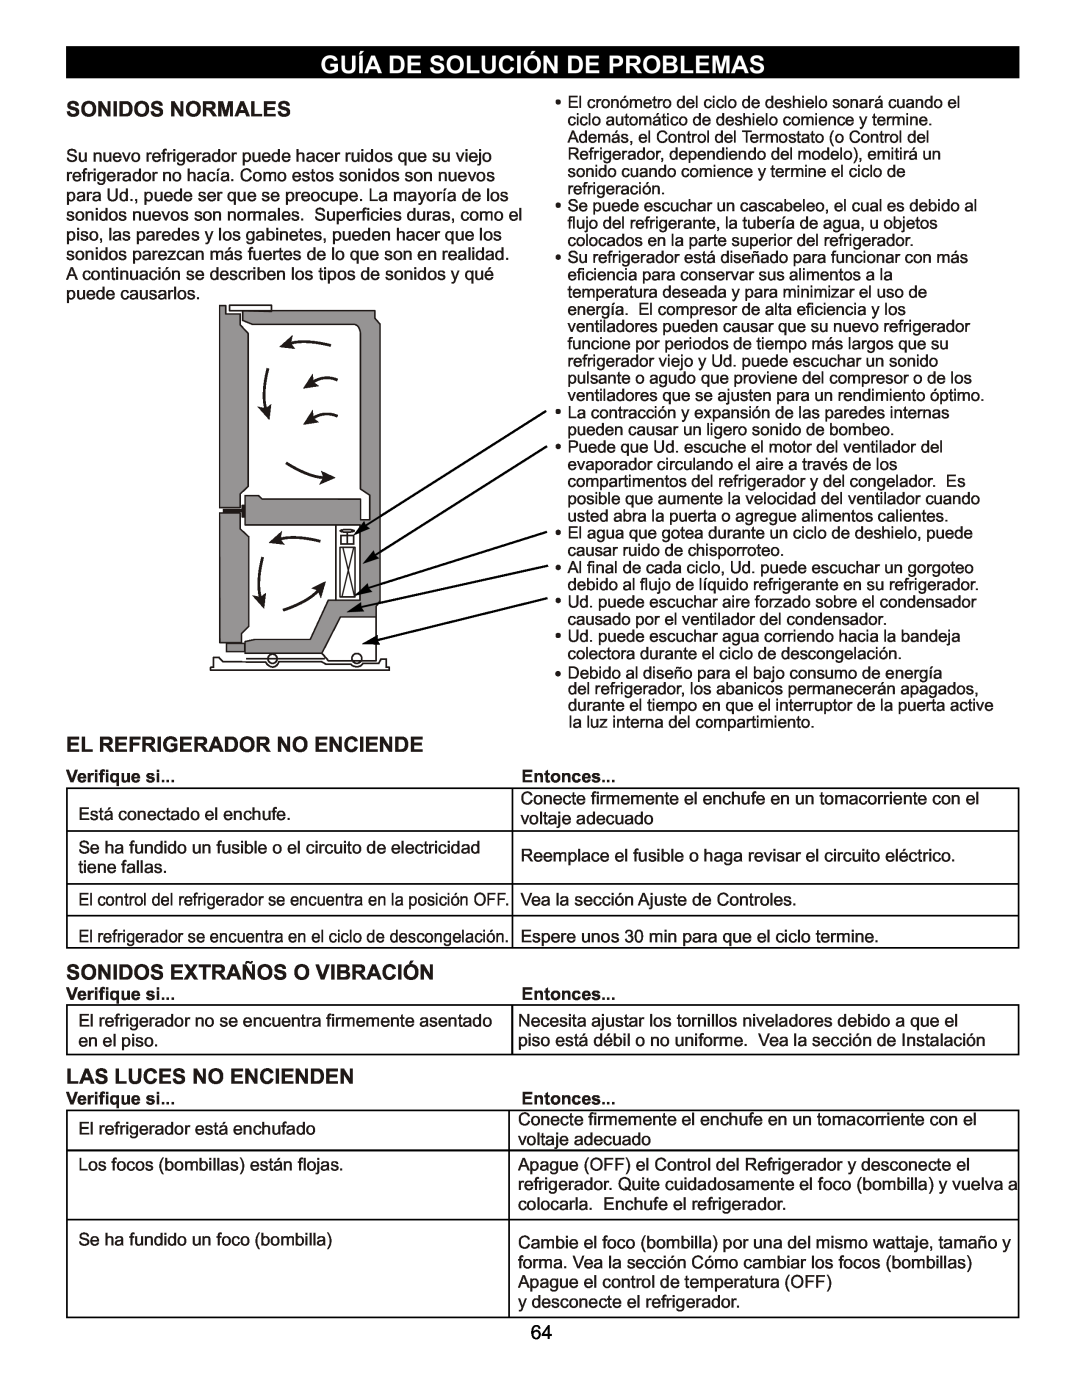 LG Electronics LDC2272 Guía De Solución De Problemas, El Refrigerador No Enciende, Sonidos Extraños O Vibración, Entonces 